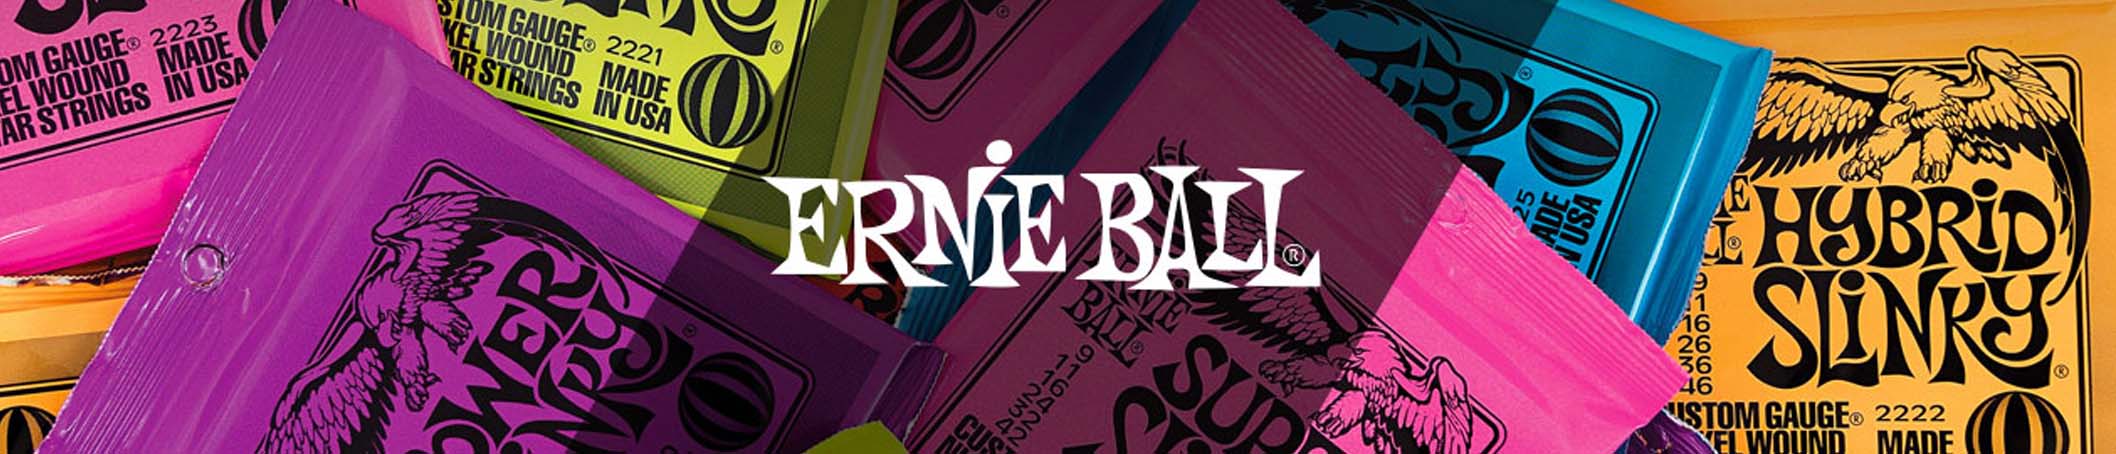 ernie ball banner